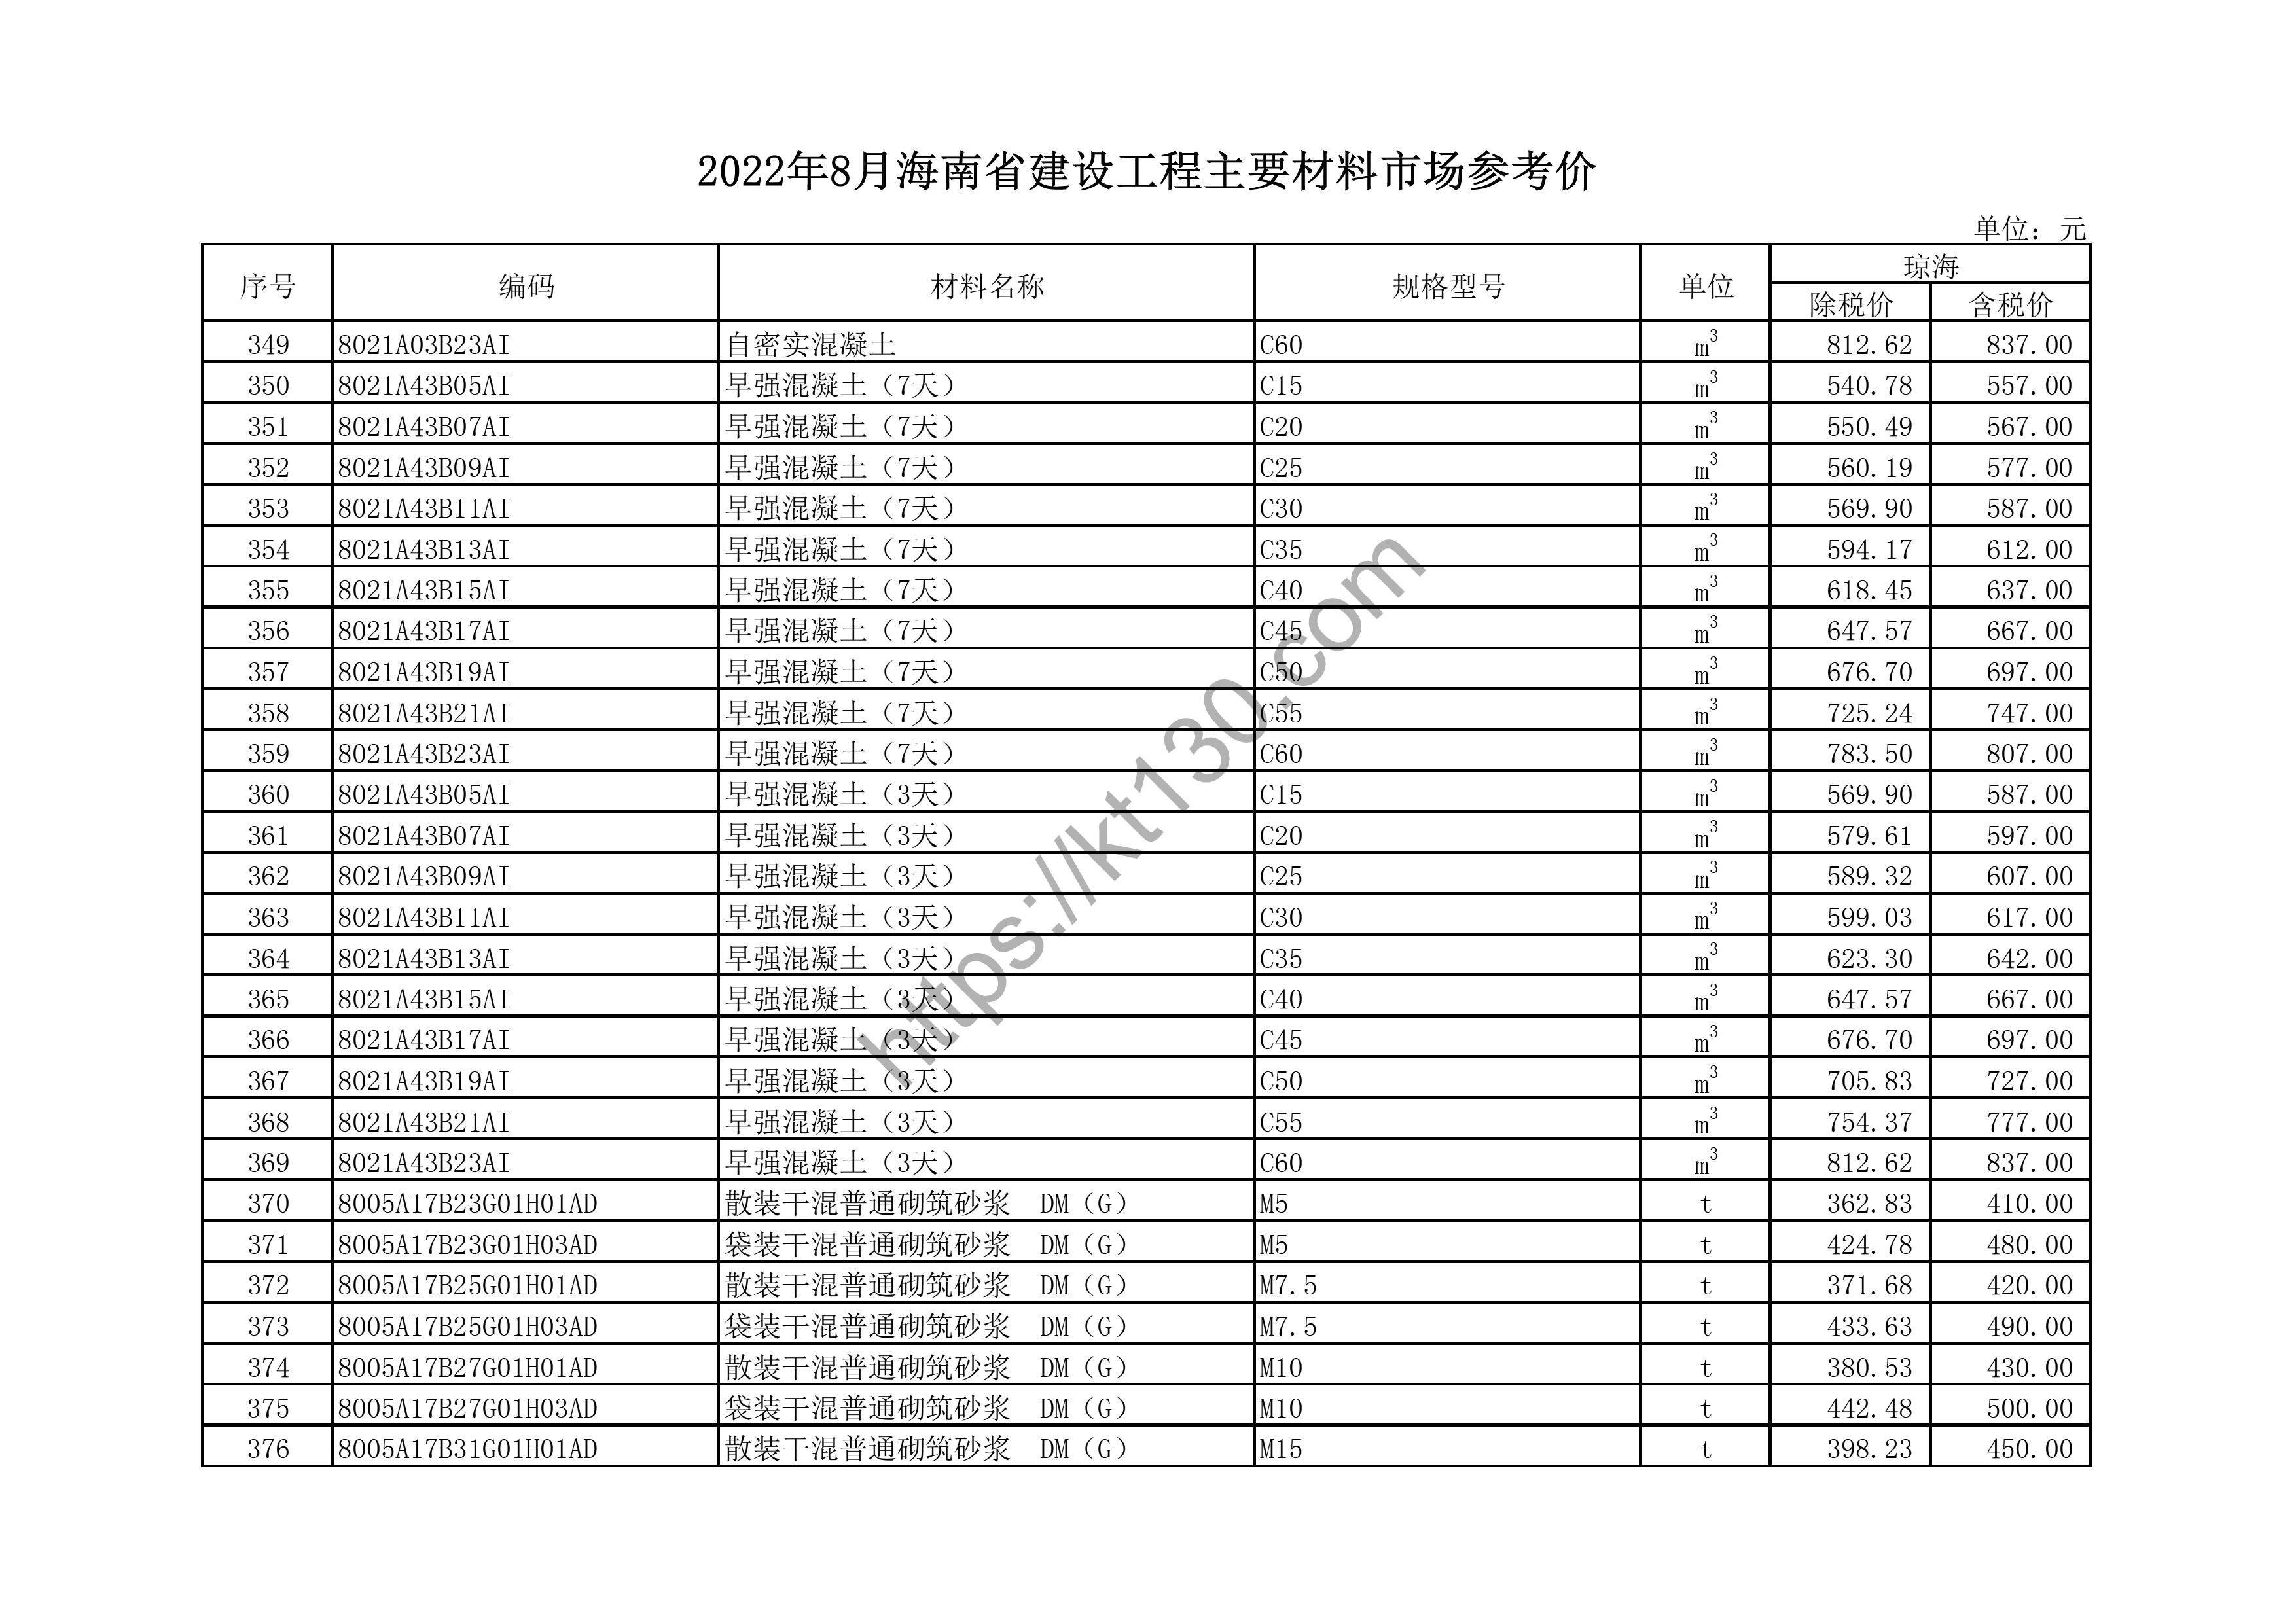 海南省2022年8月建筑材料价_黑色金属_44660